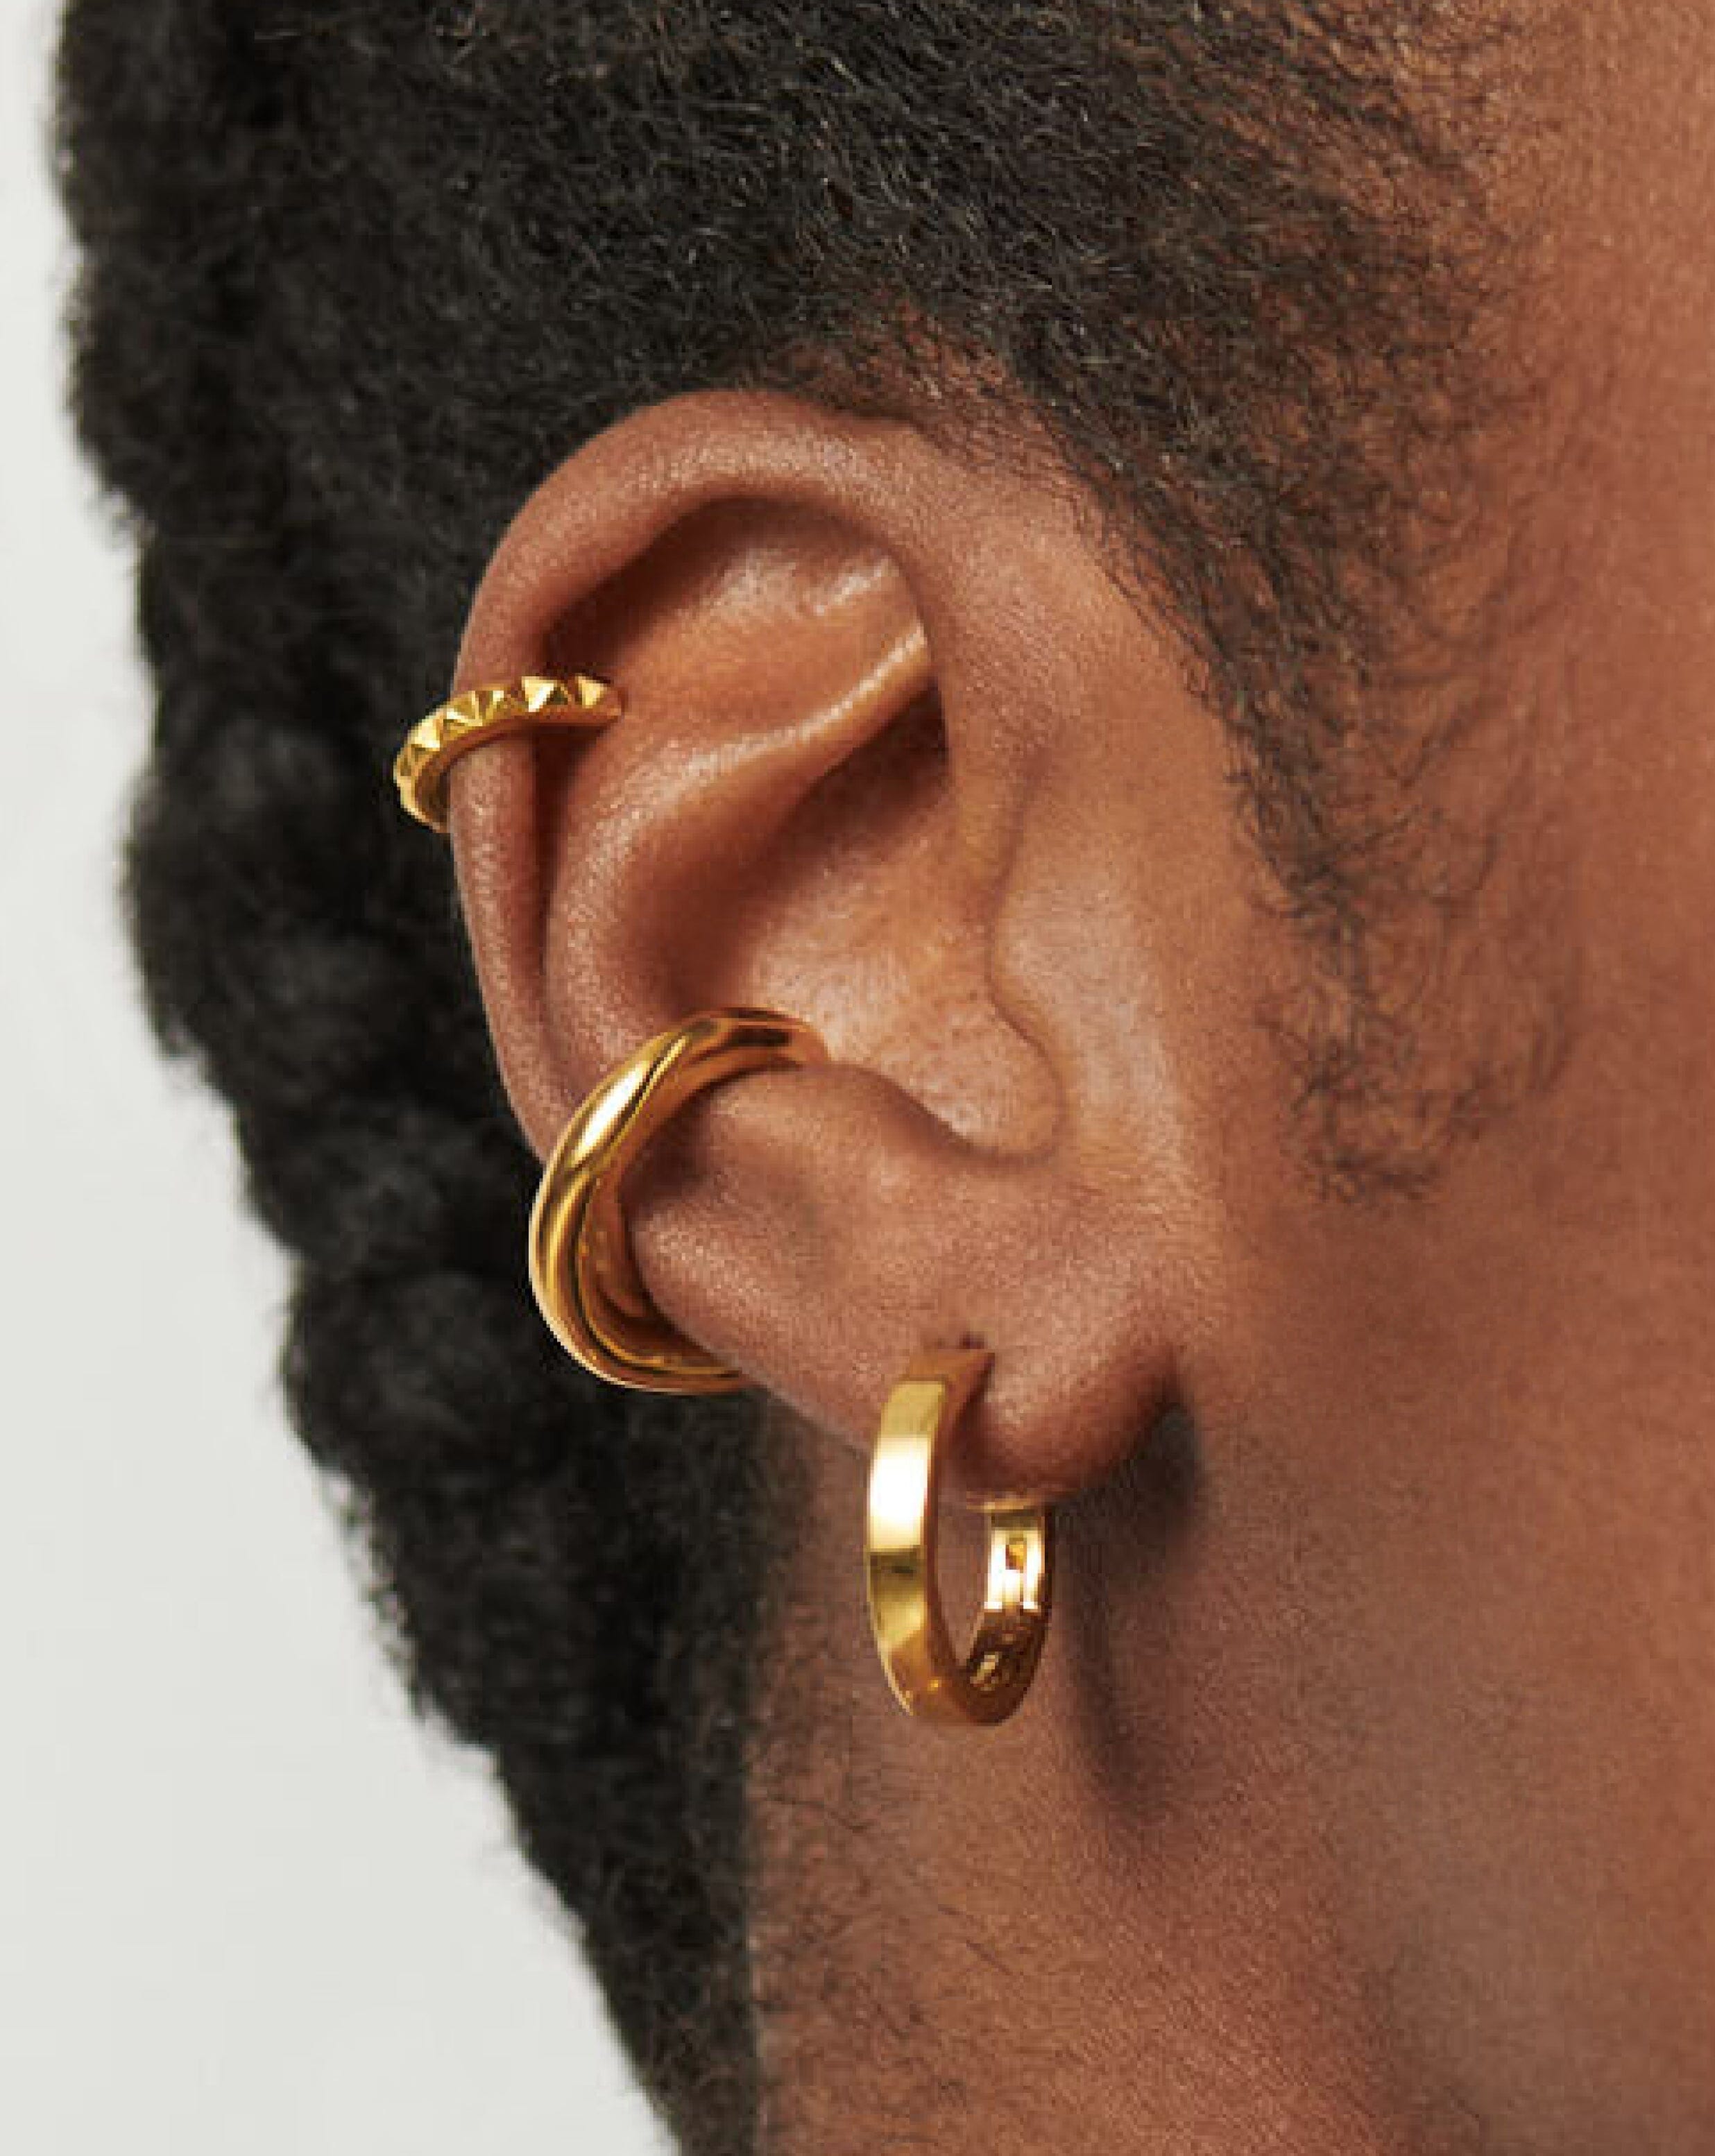 Classic Gold Hoop Earrings